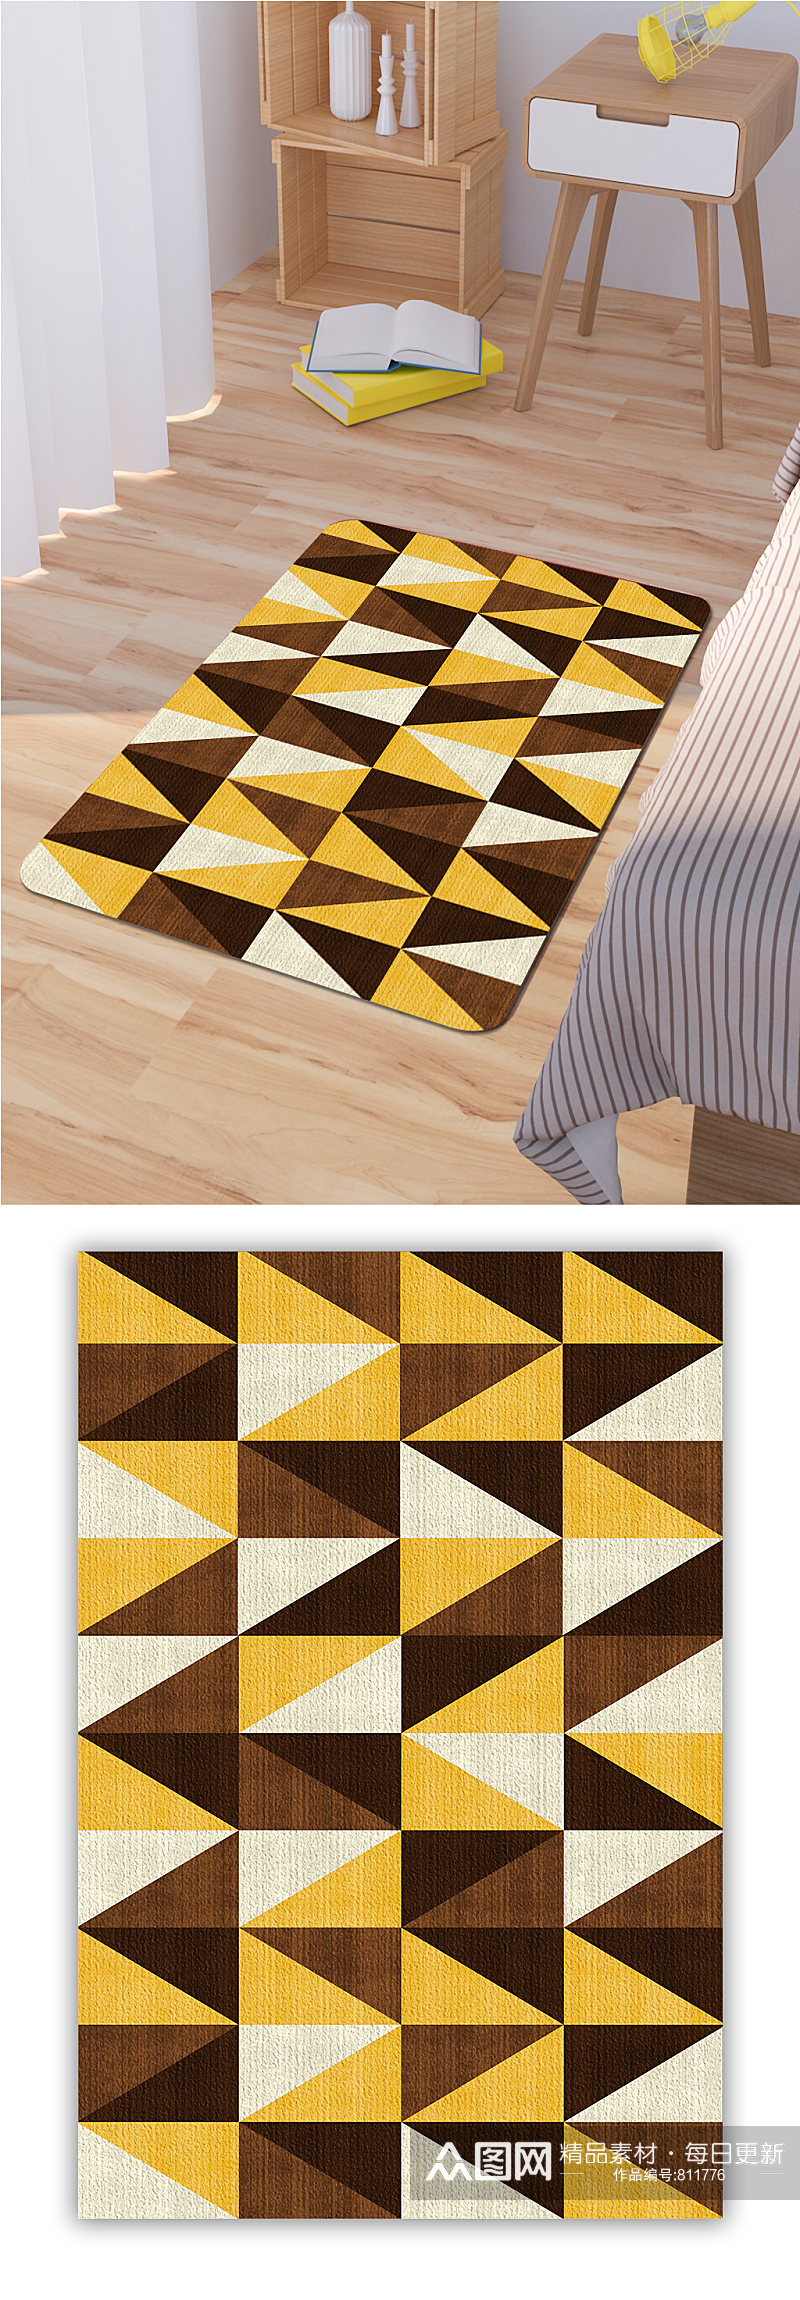 卧室地毯中式地毯素材